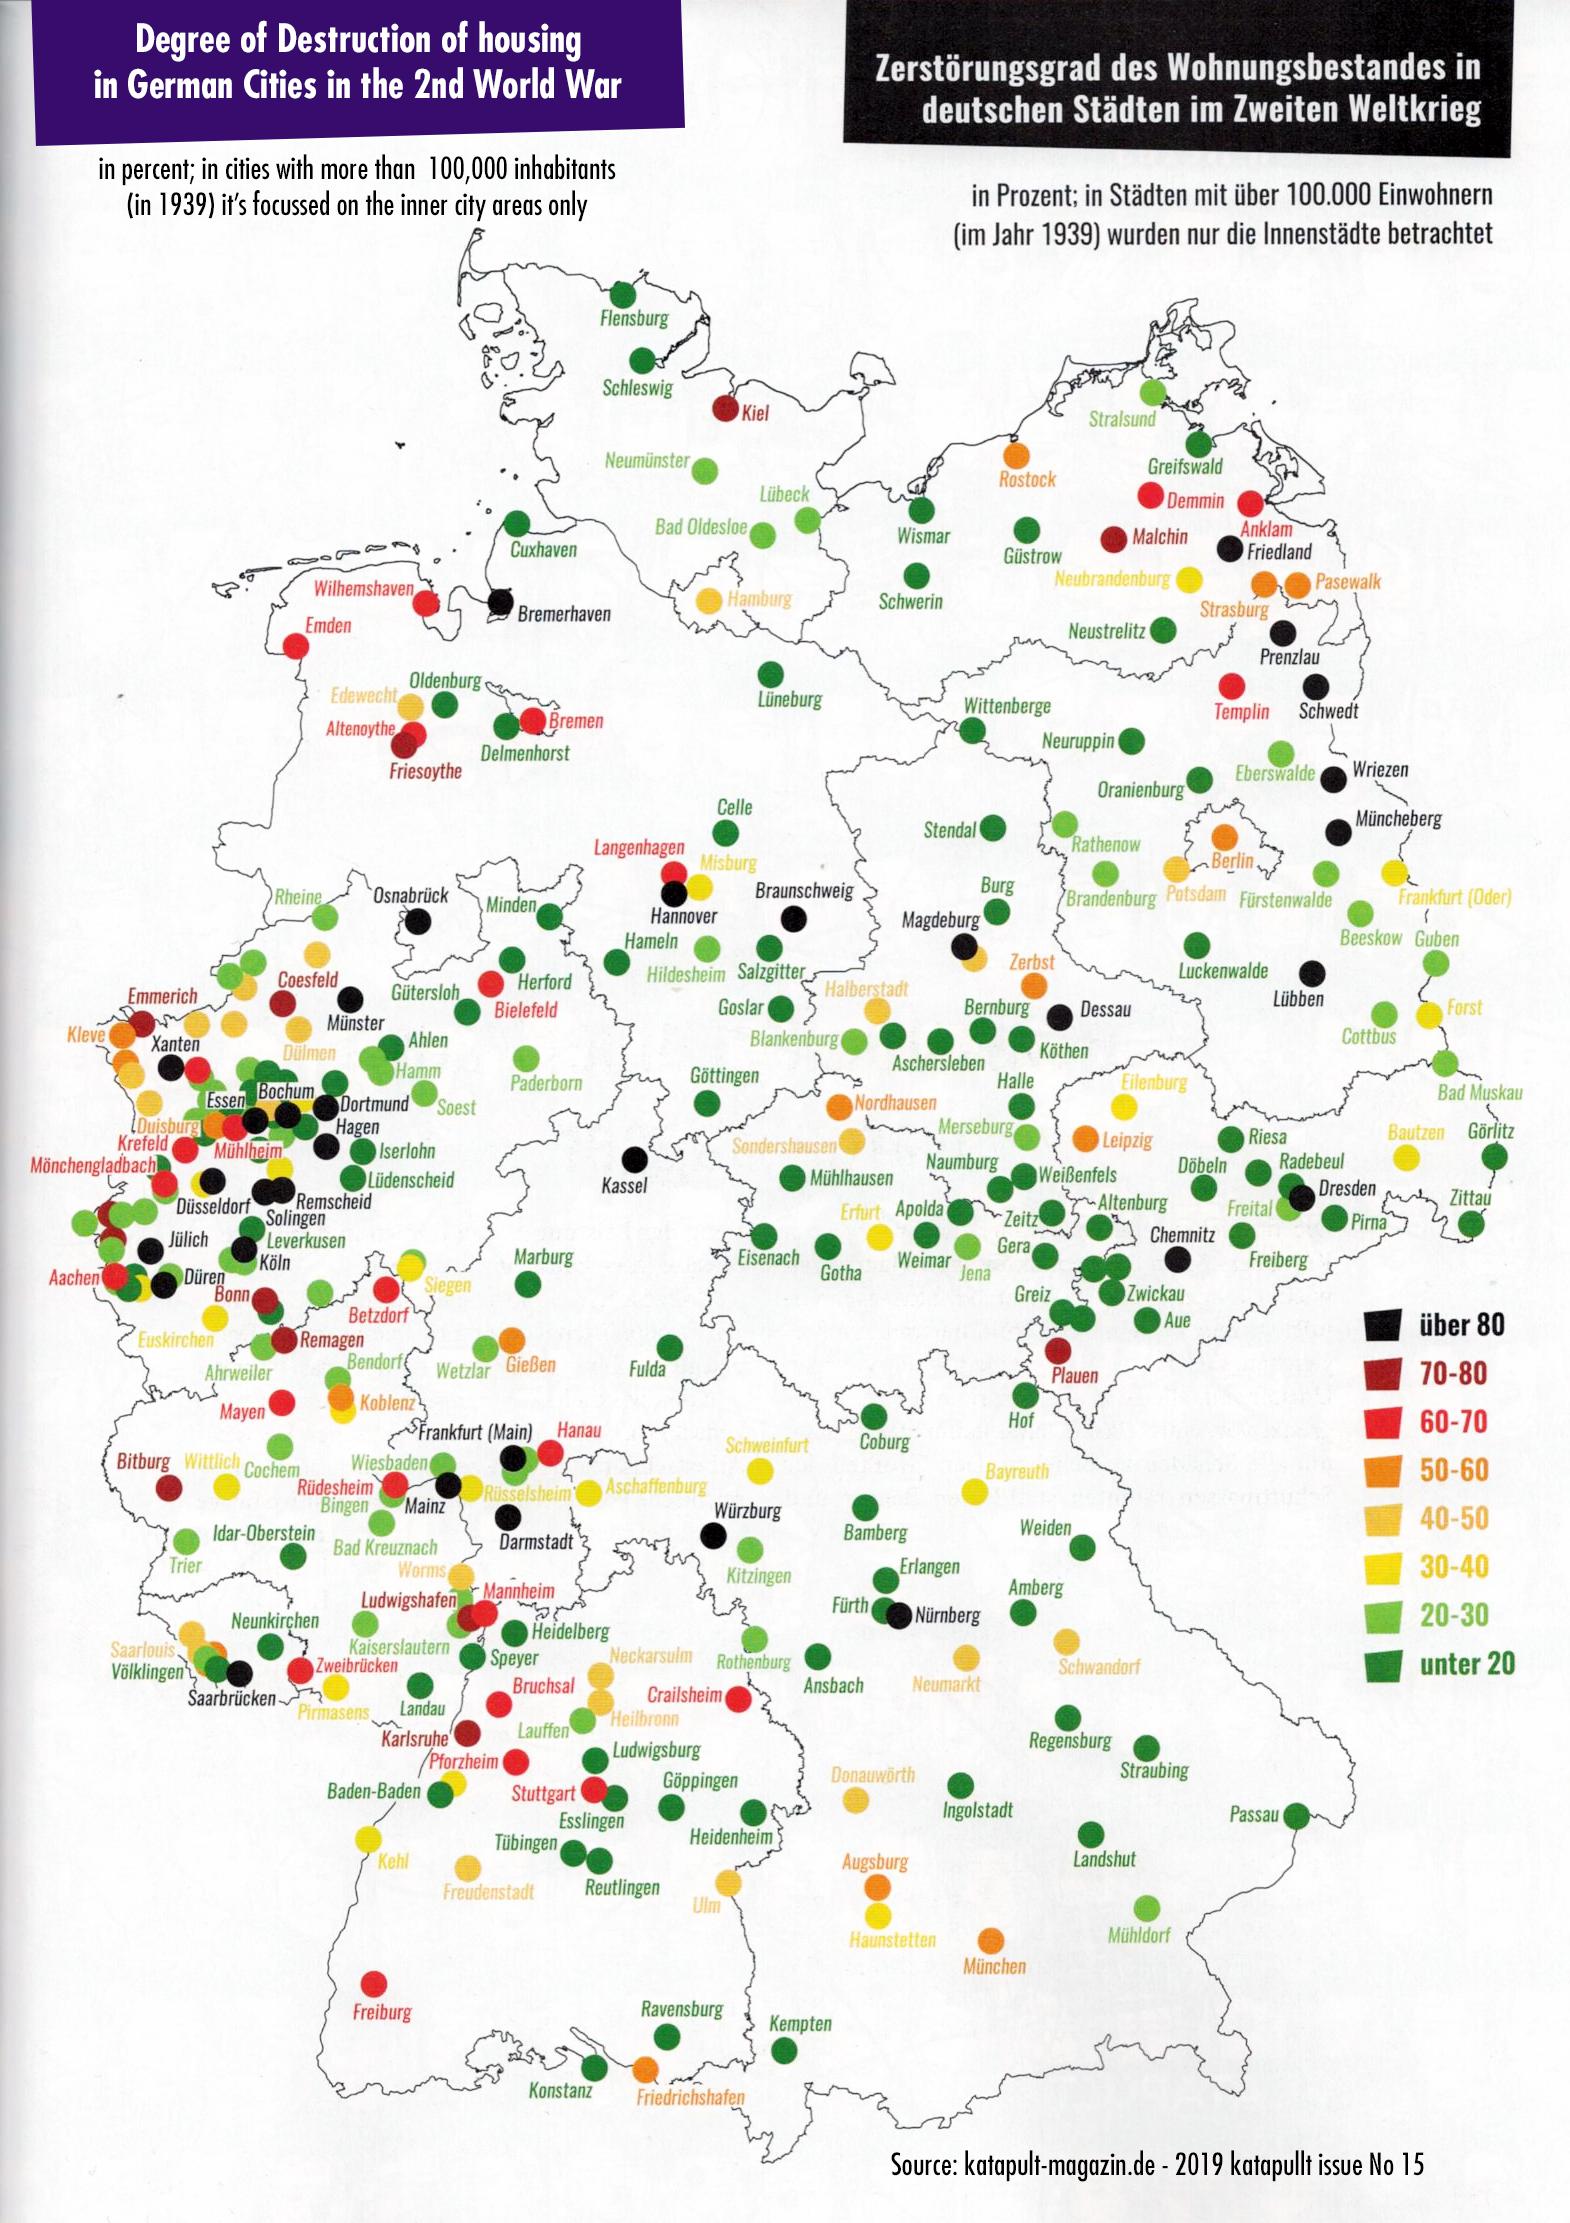 Stopień zniszczenia największych niemieckich miast w wyniku II wojny światowej (w proc.)